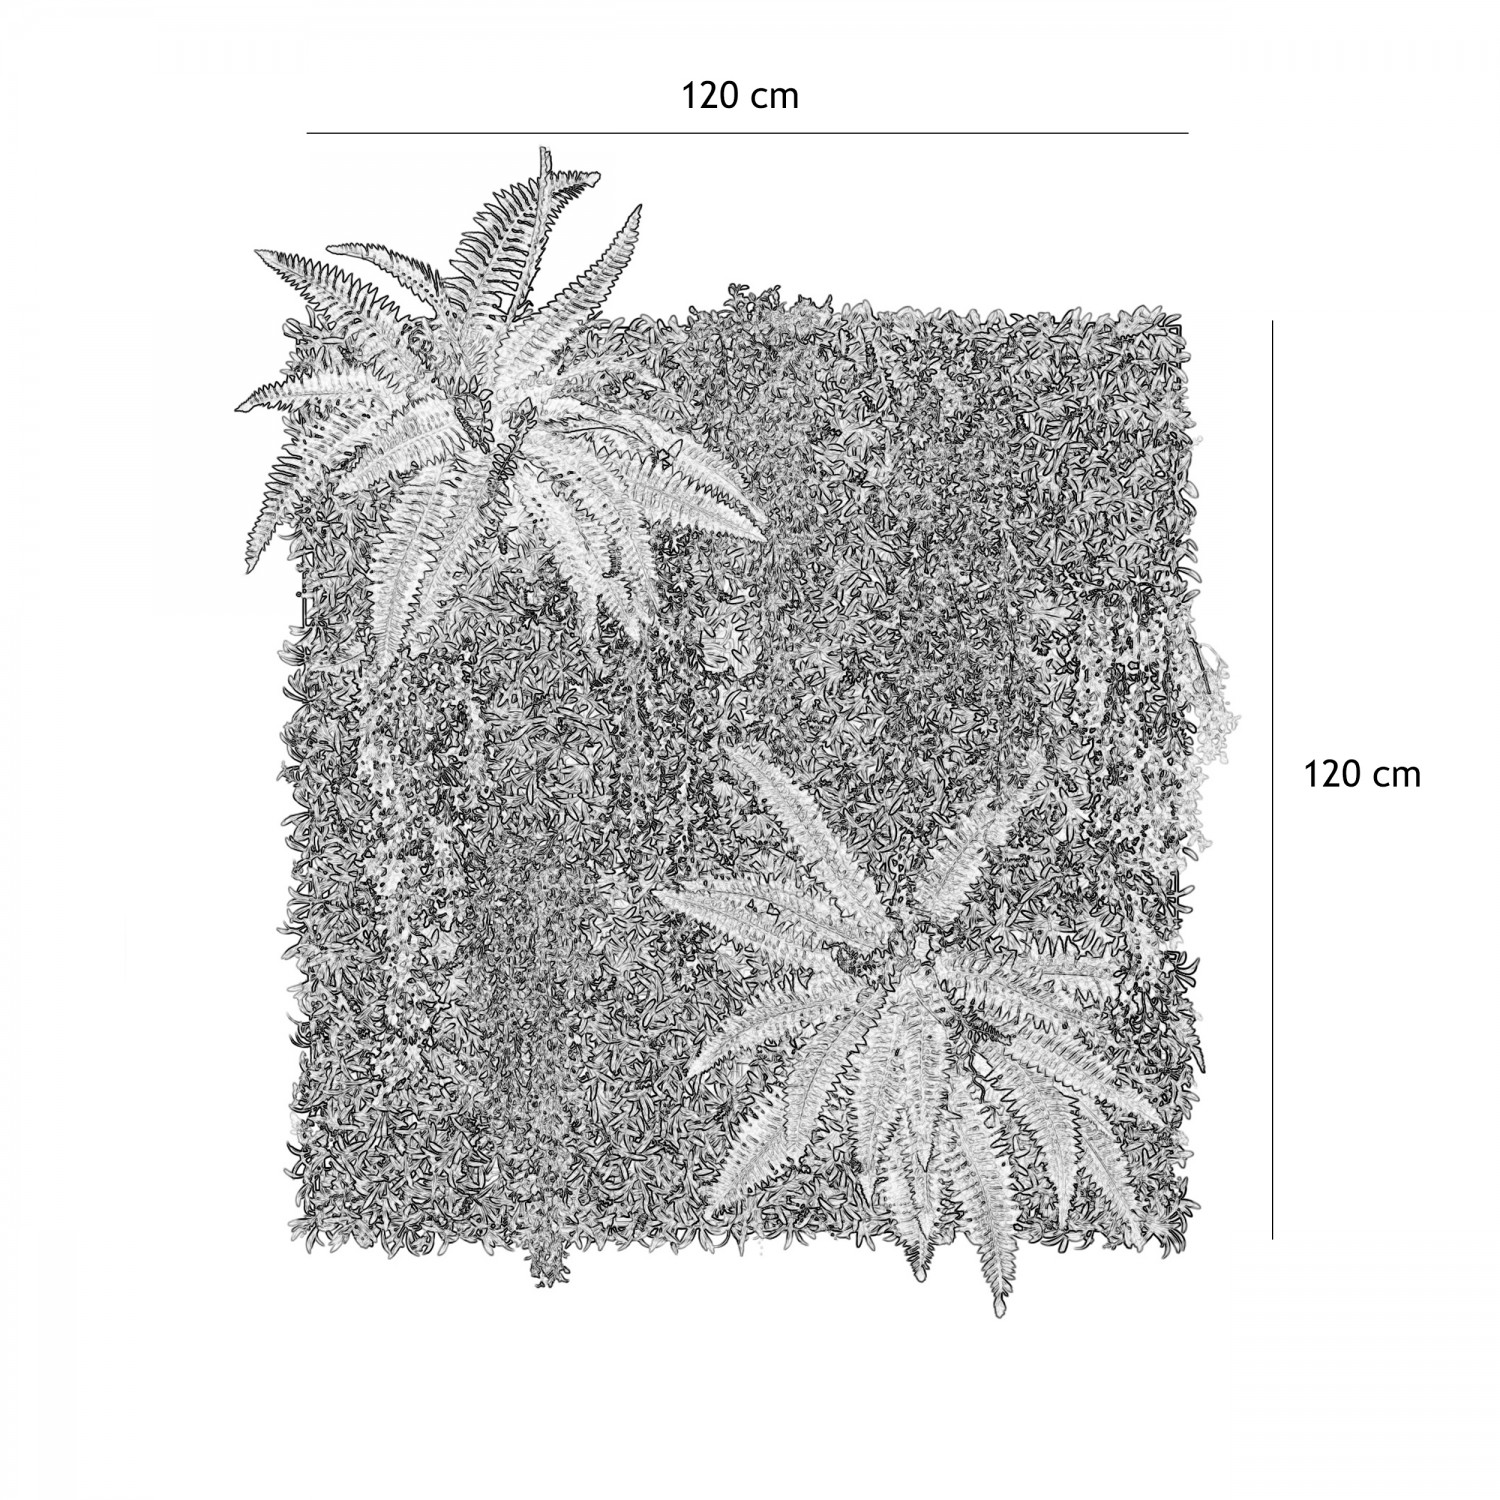 Mur végétal artificiel en kit DIY 120x120cm graphique avec les dimensions